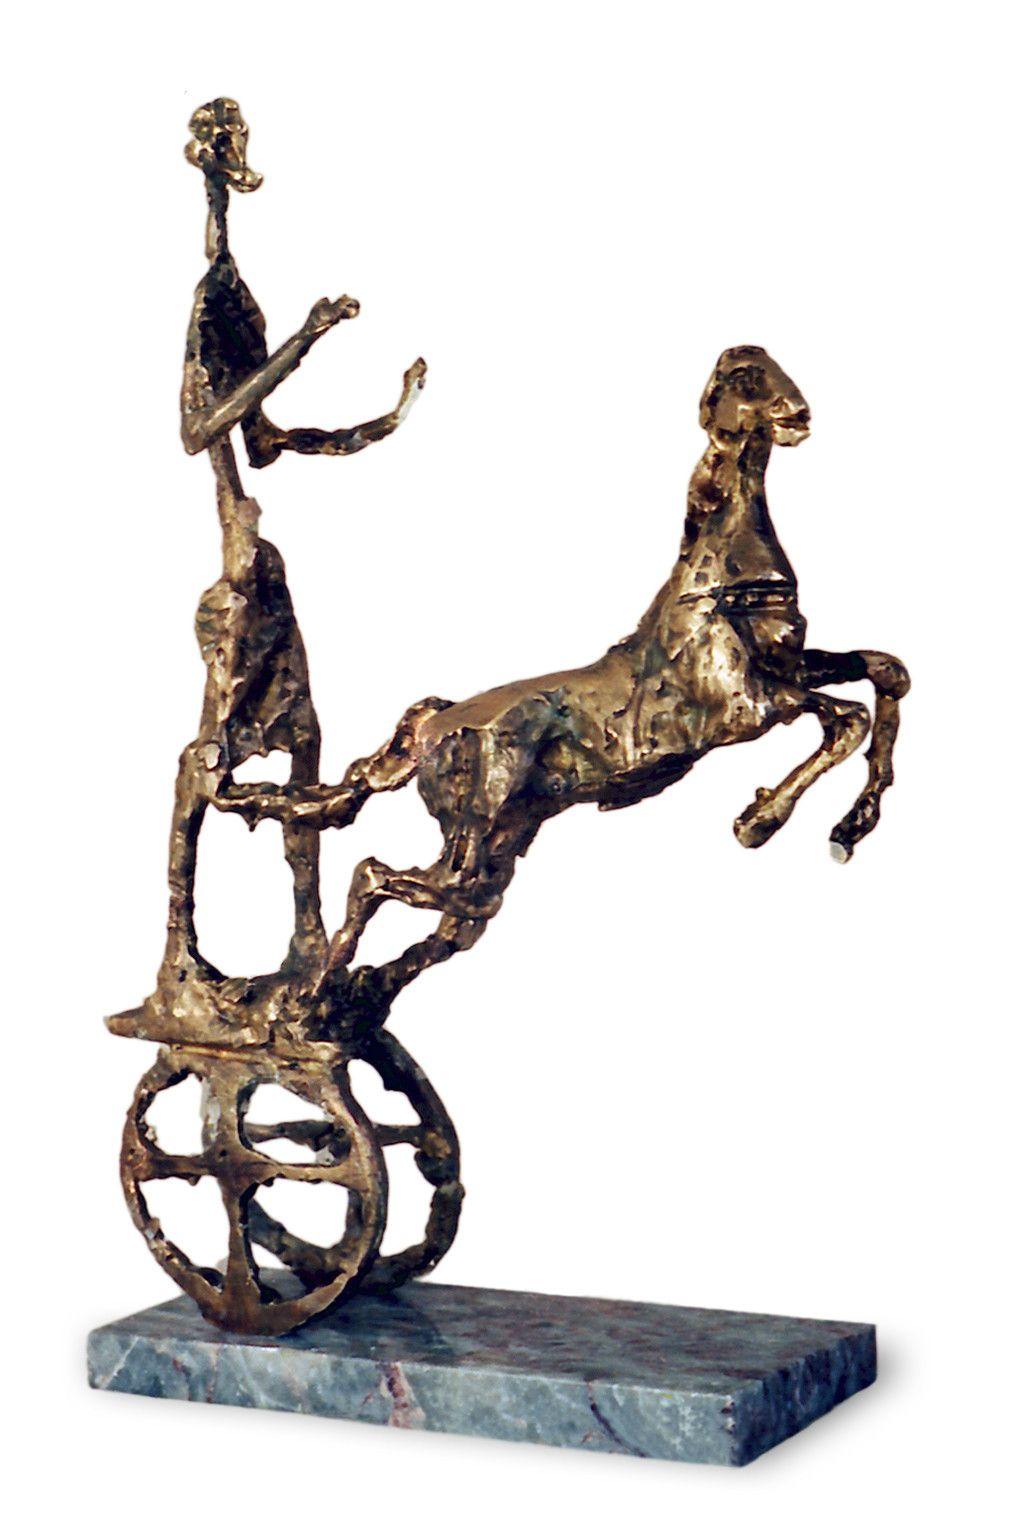 Chariot II, bronze sculpture by Ivan Minekov - Lantern Space